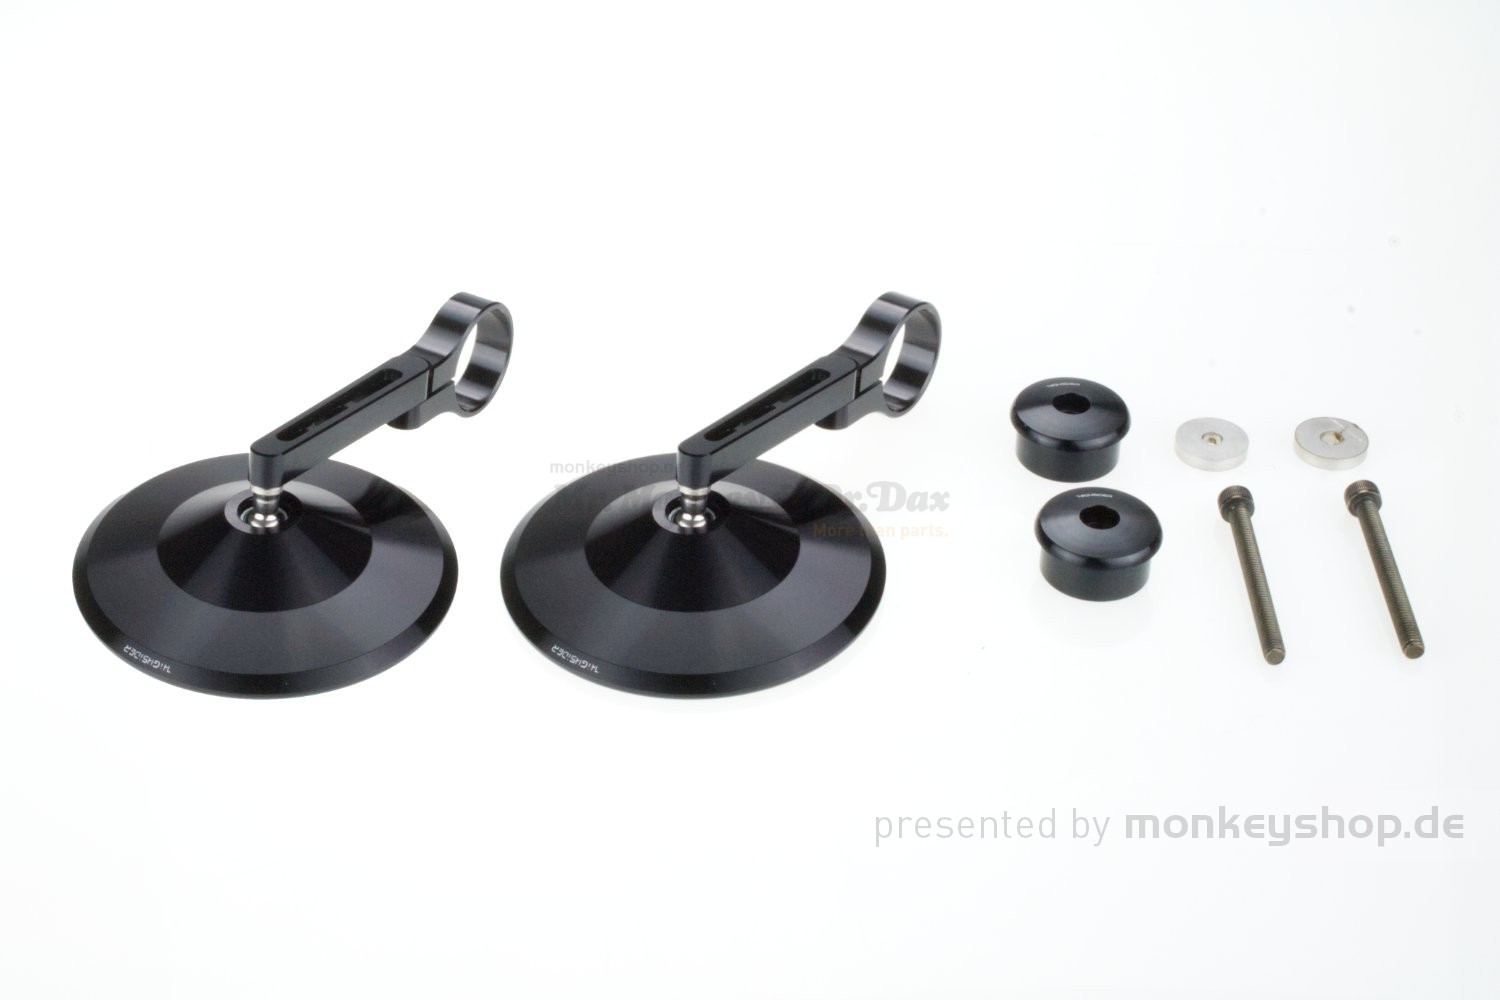 Lenkerendenspiegel, SPIEGEL, schwarz eloxiertes Aluminium, rund, e-geprüft -SP-IEL